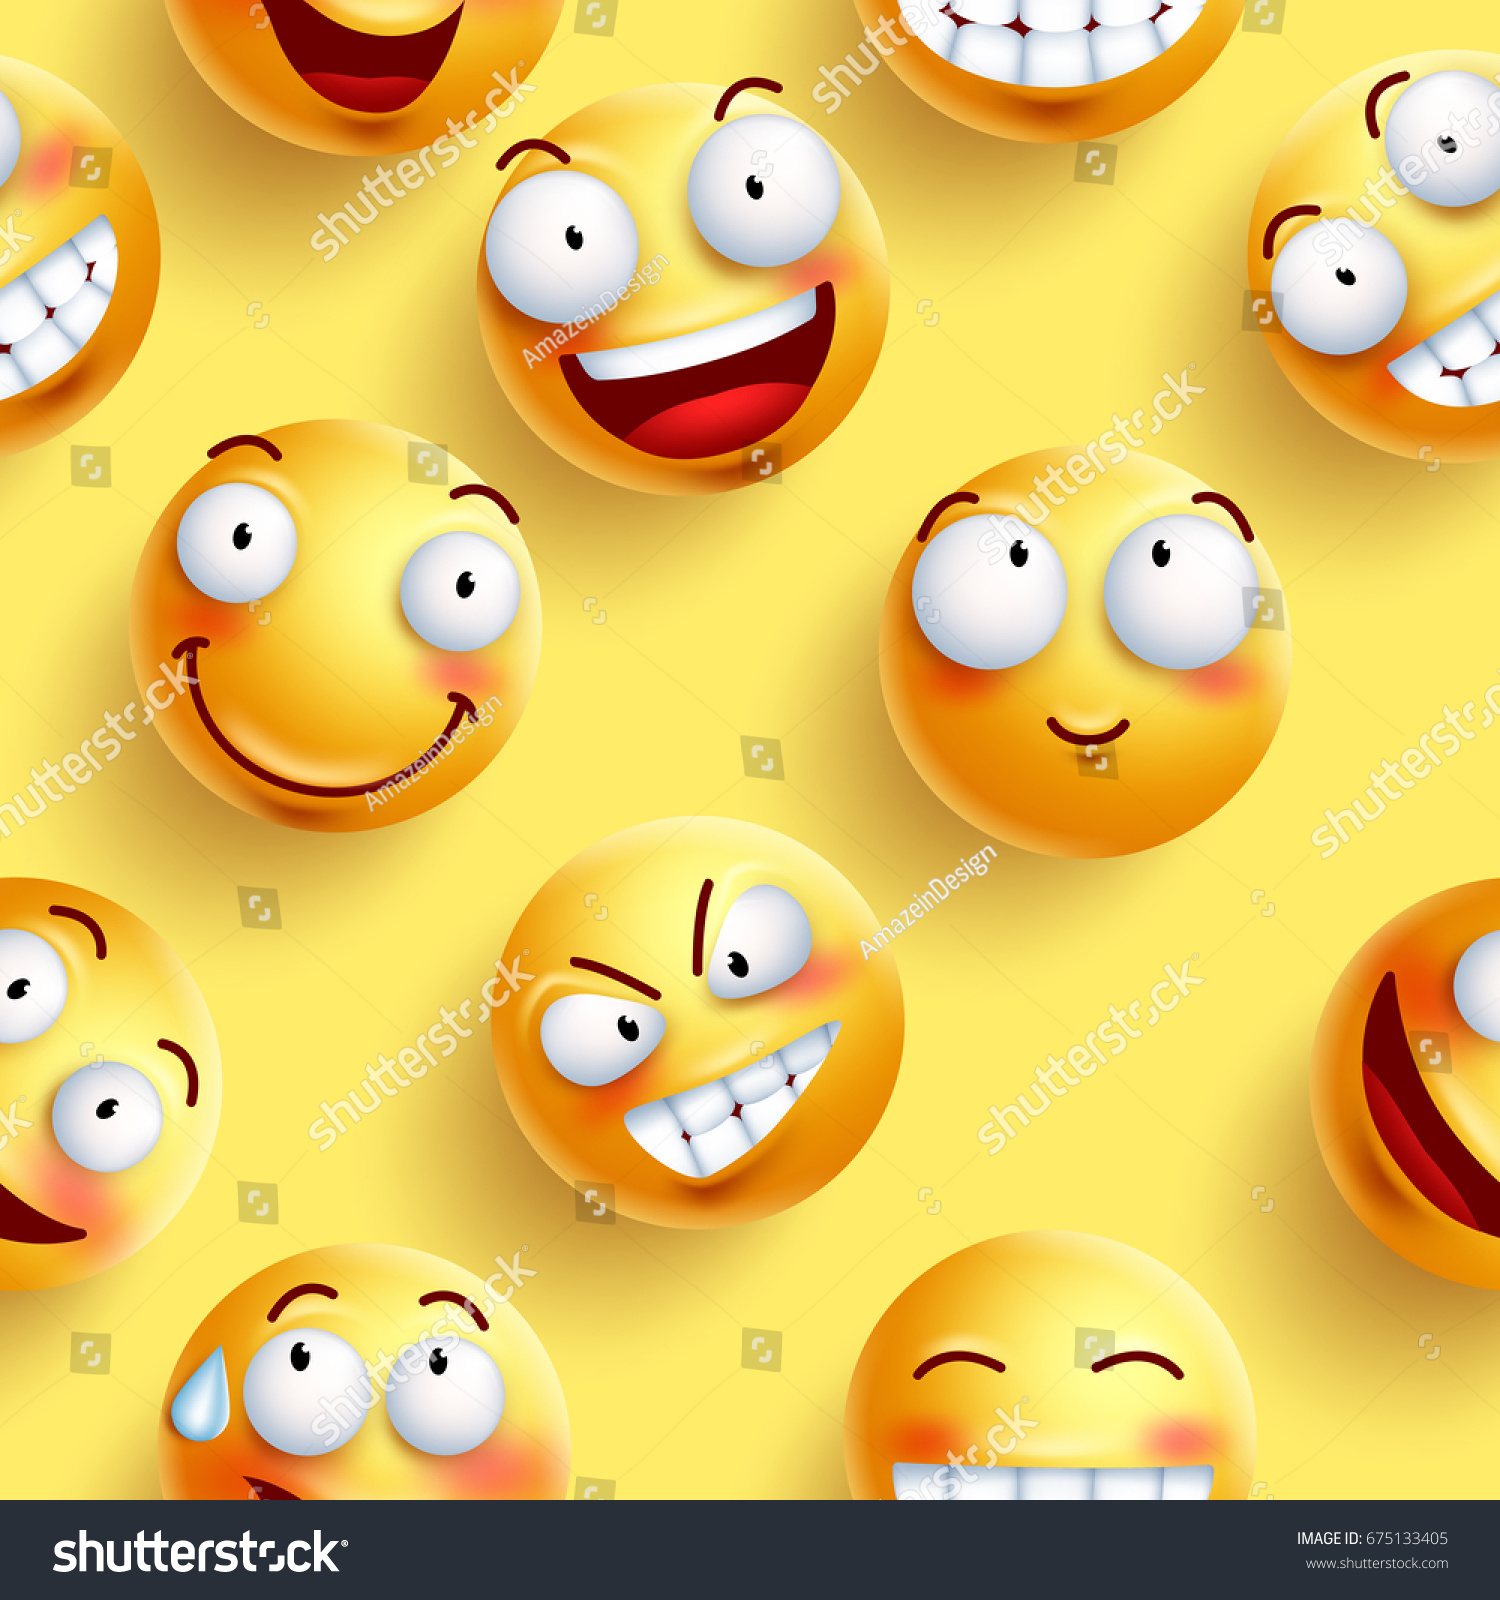 スマイルスの壁紙は 黄色のシームレスなベクター画像パターンで 幸せそうな顔と表情が連続しています ベクターイラスト のベクター画像素材 ロイヤリティフリー 675133405